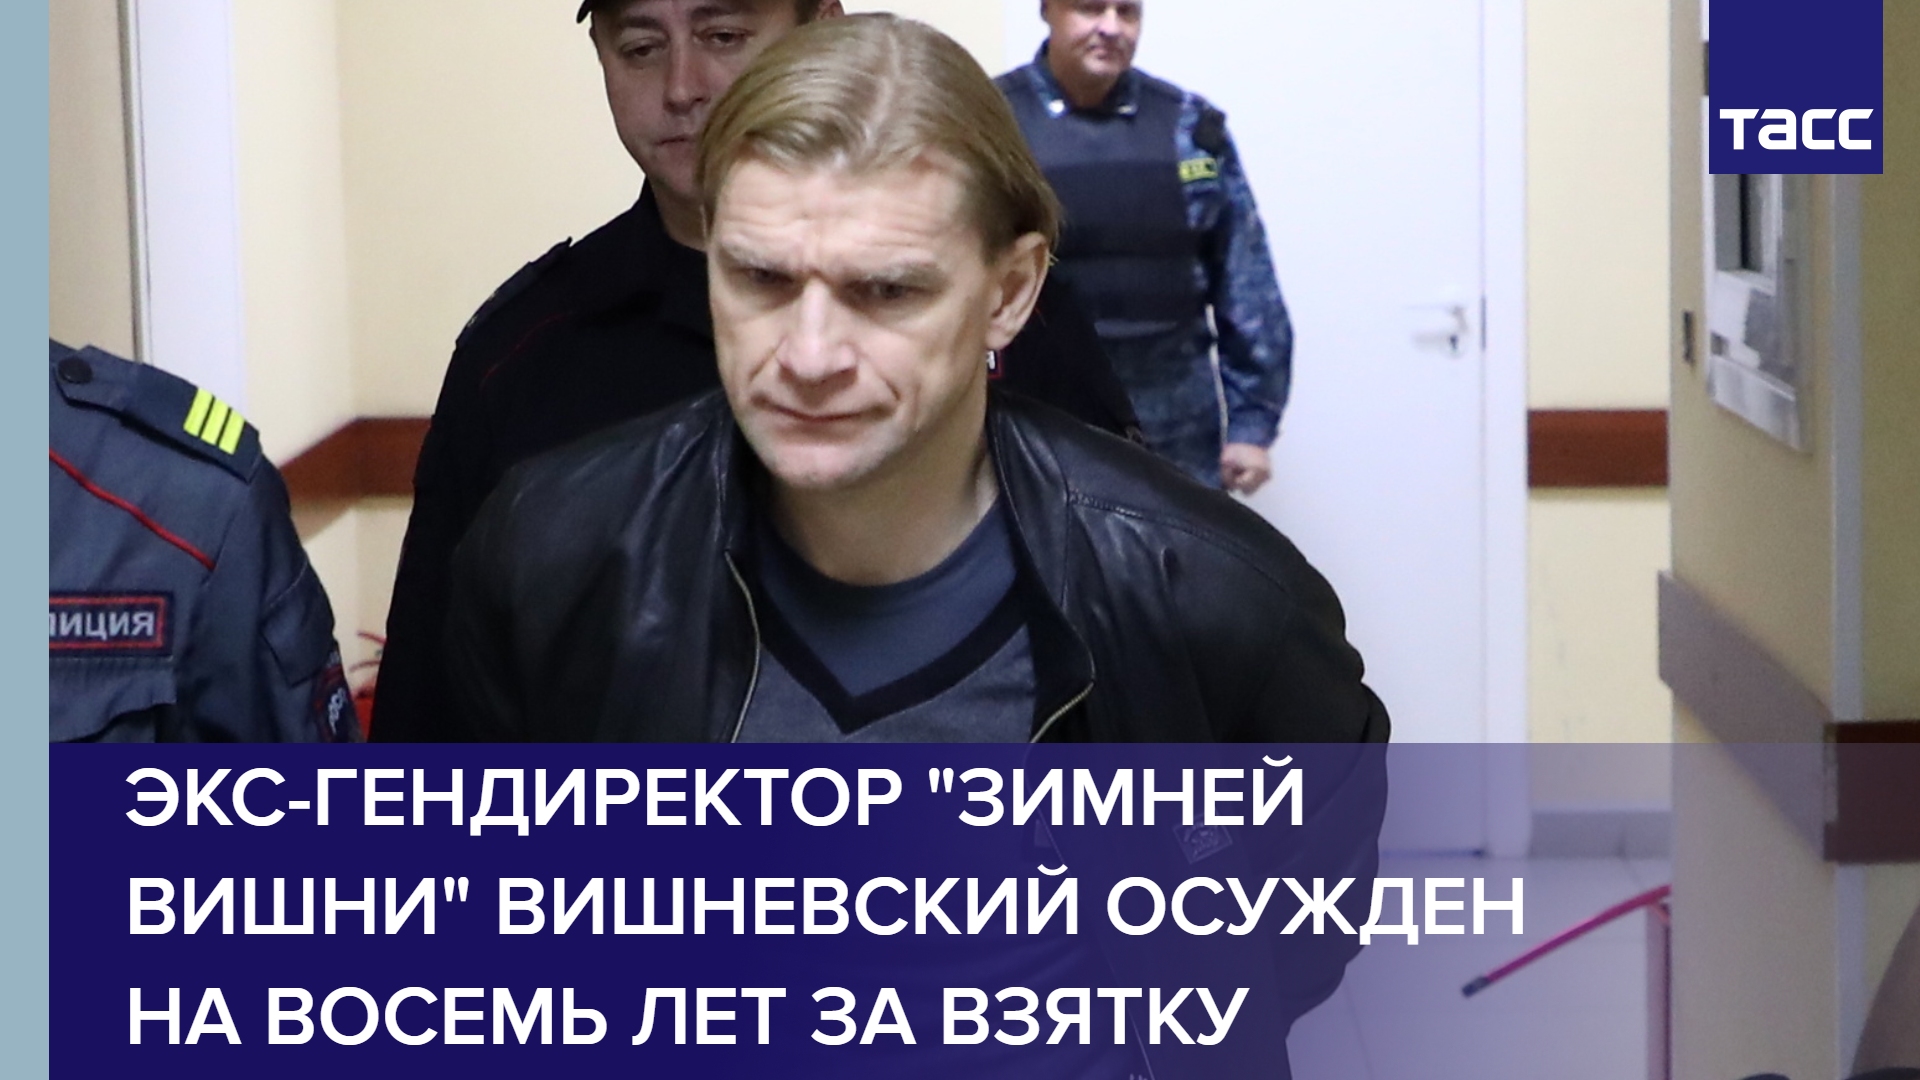 Экс-гендиректор "Зимней вишни" Вишневский осужден на восемь лет за взятку #shorts